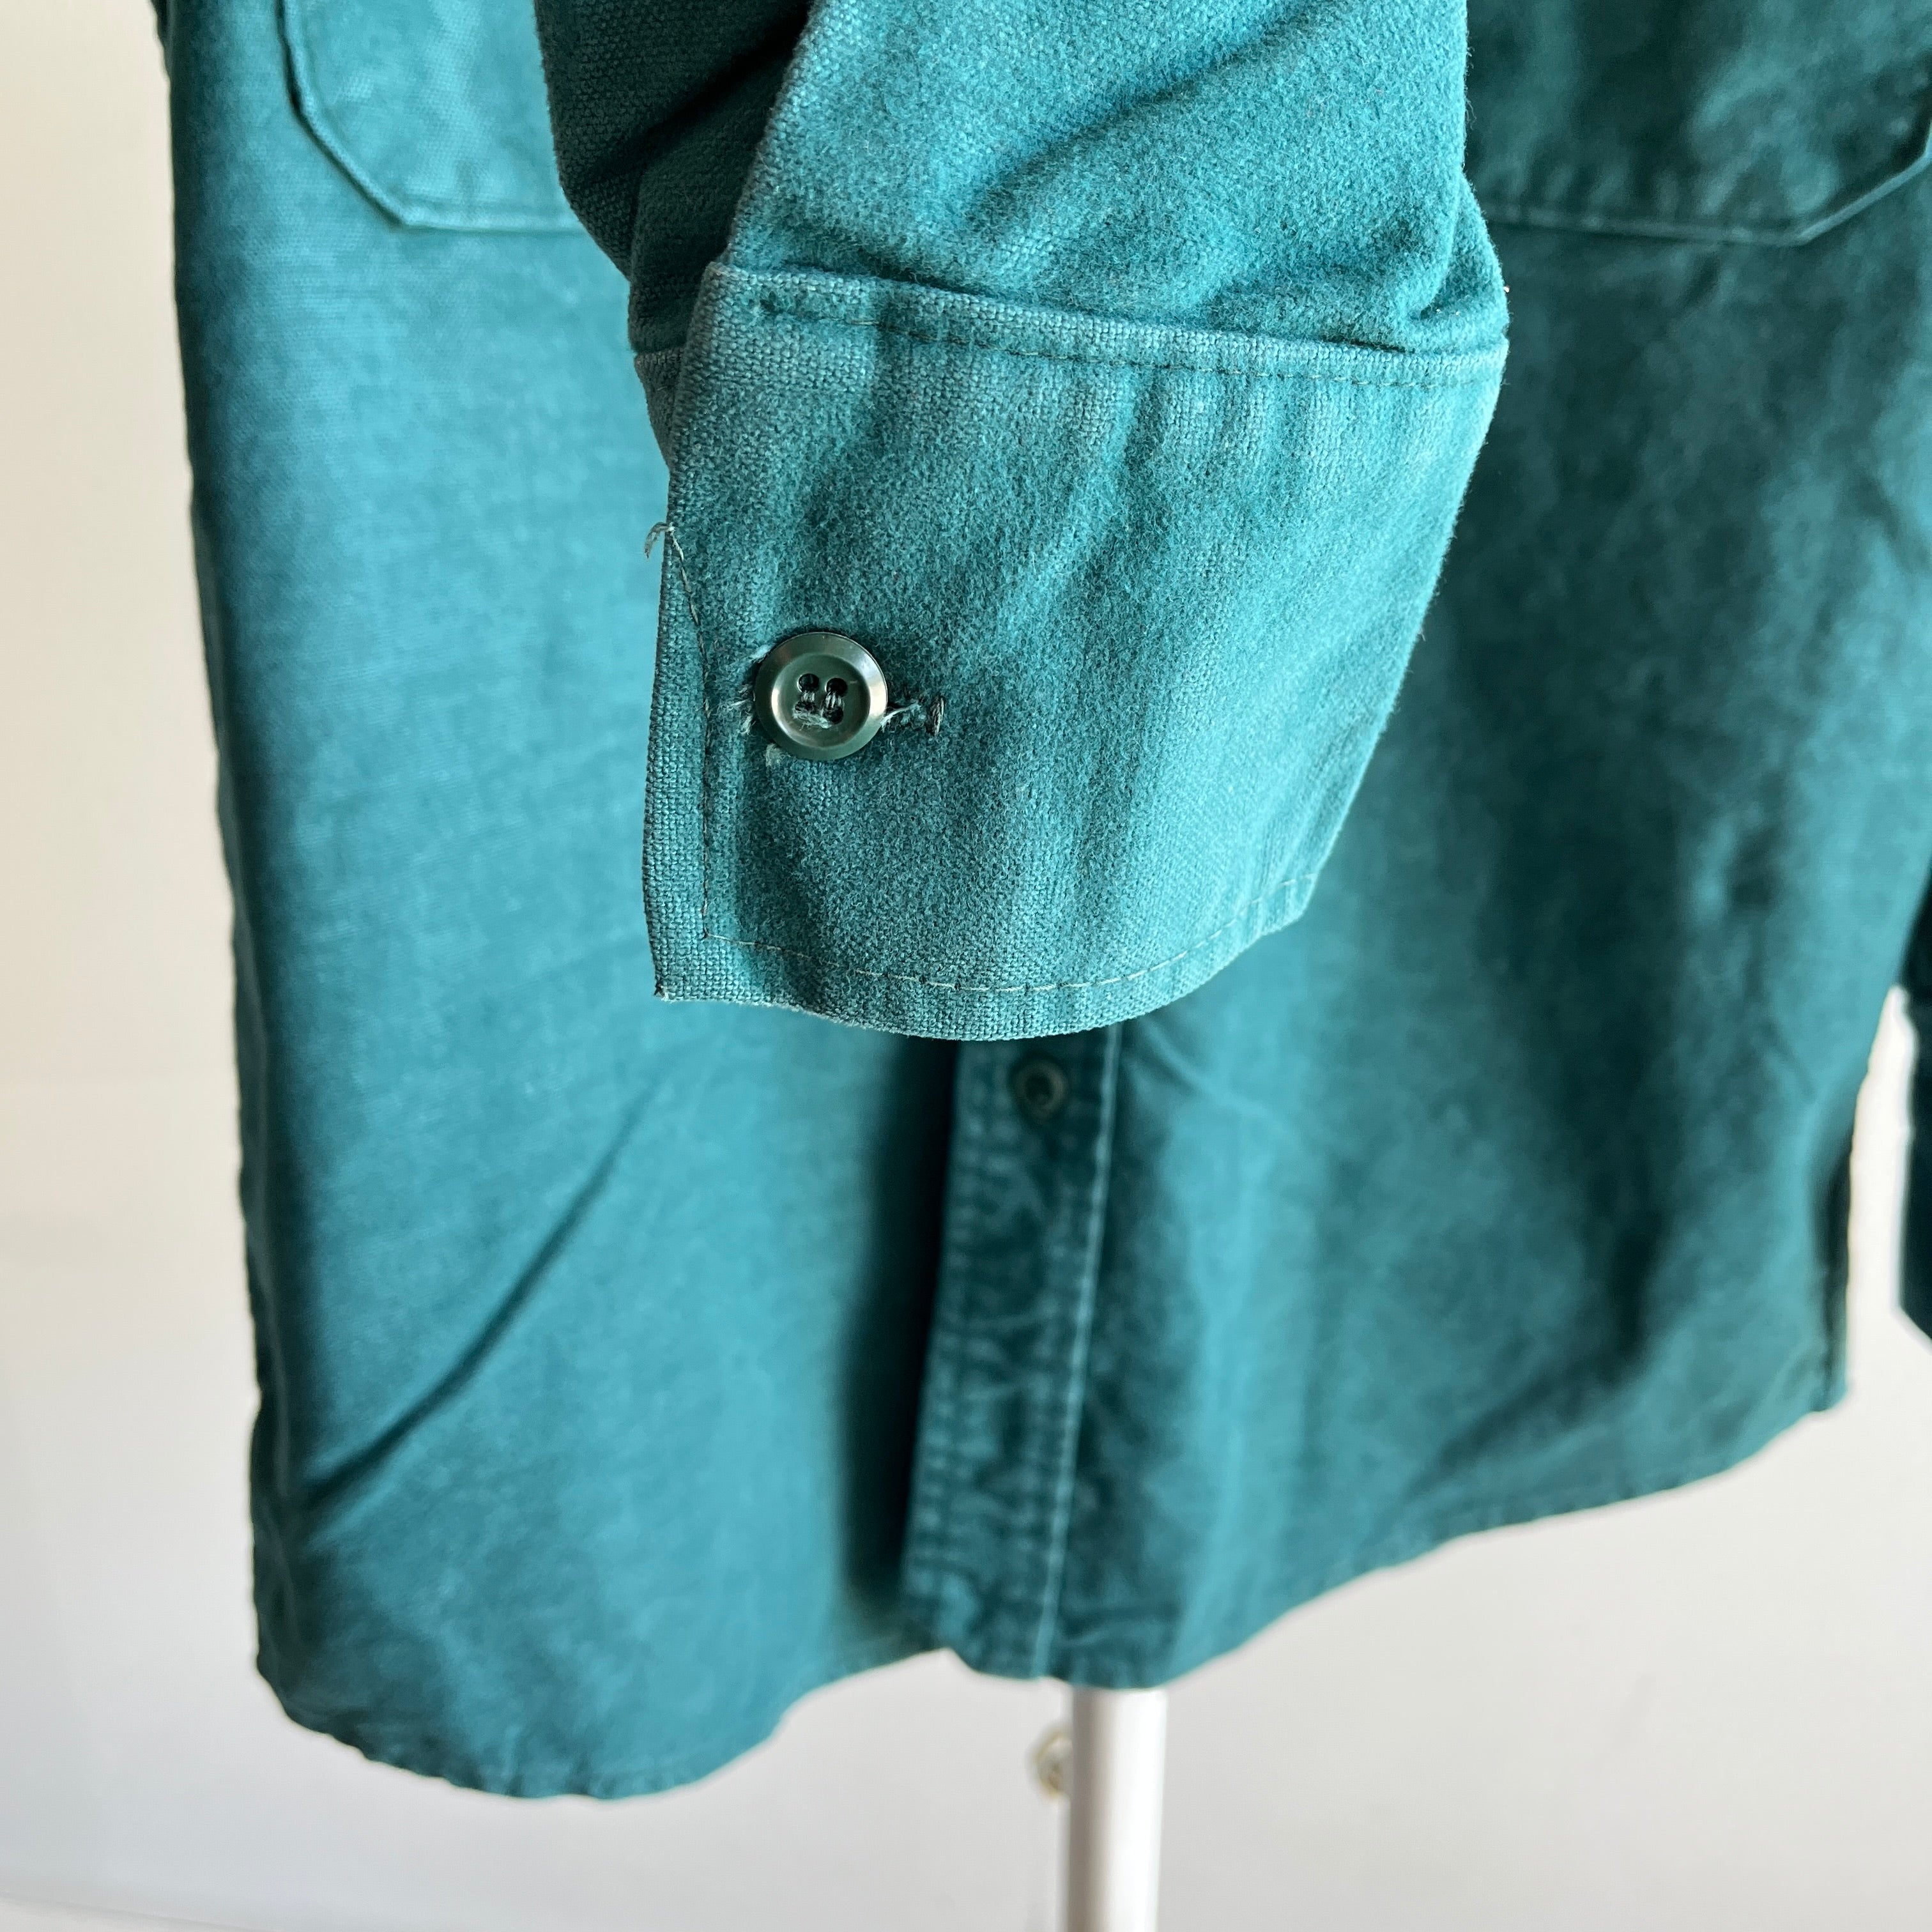 1960/70s Medium Weight Soft Dark Green Cotton Flannel